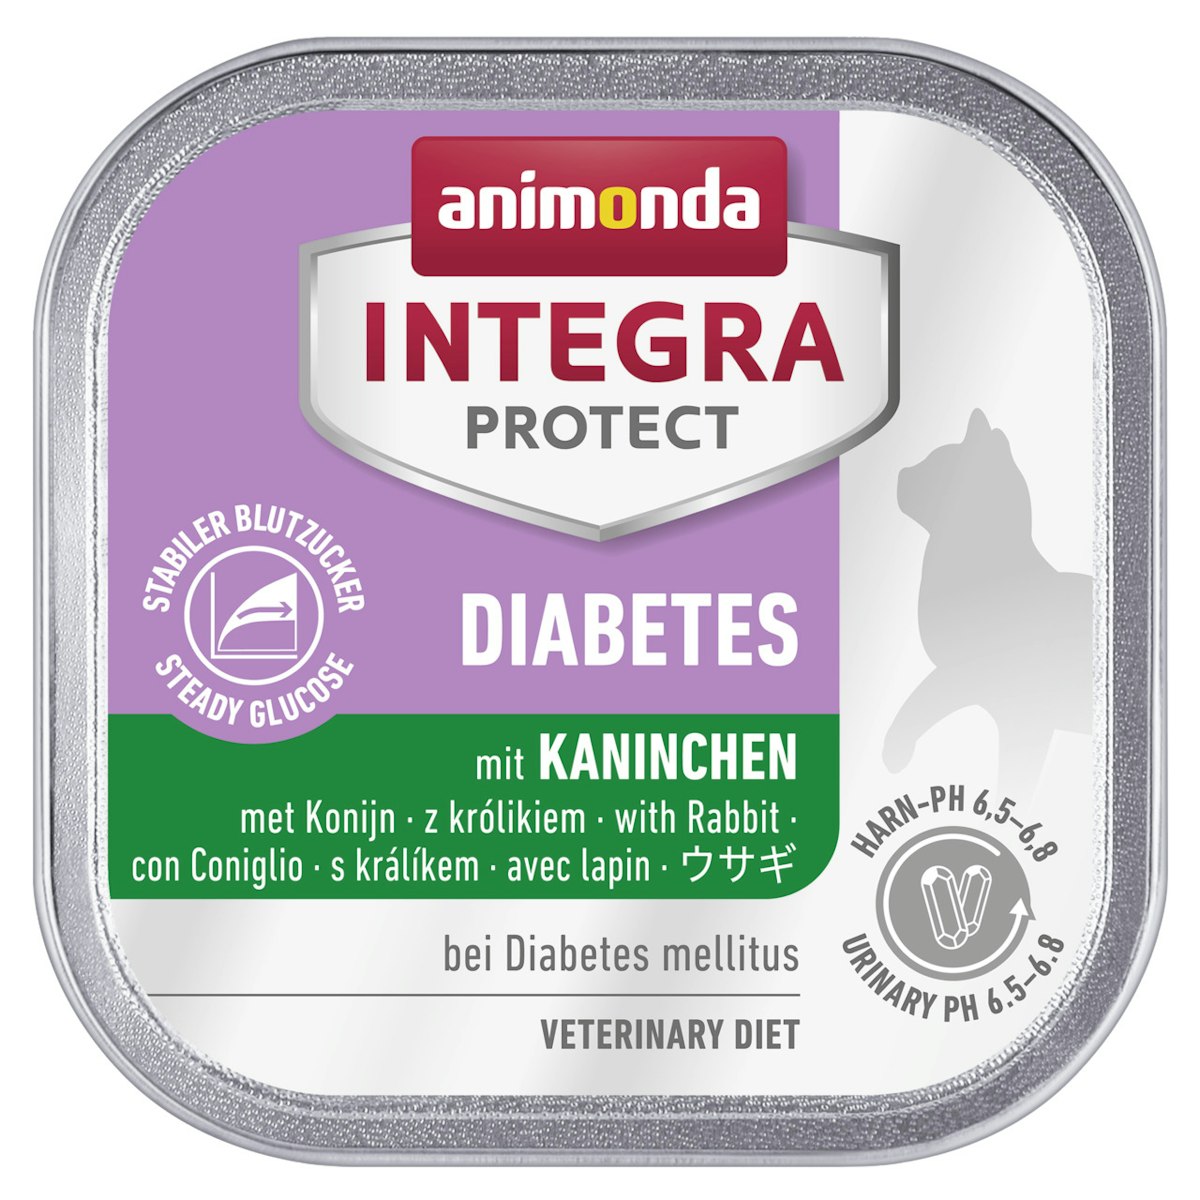 animonda Integra Protect Diabetes 100g Schale Katzennassfutter Sparpaket 32 x 100 Gramm mit Kaninchen